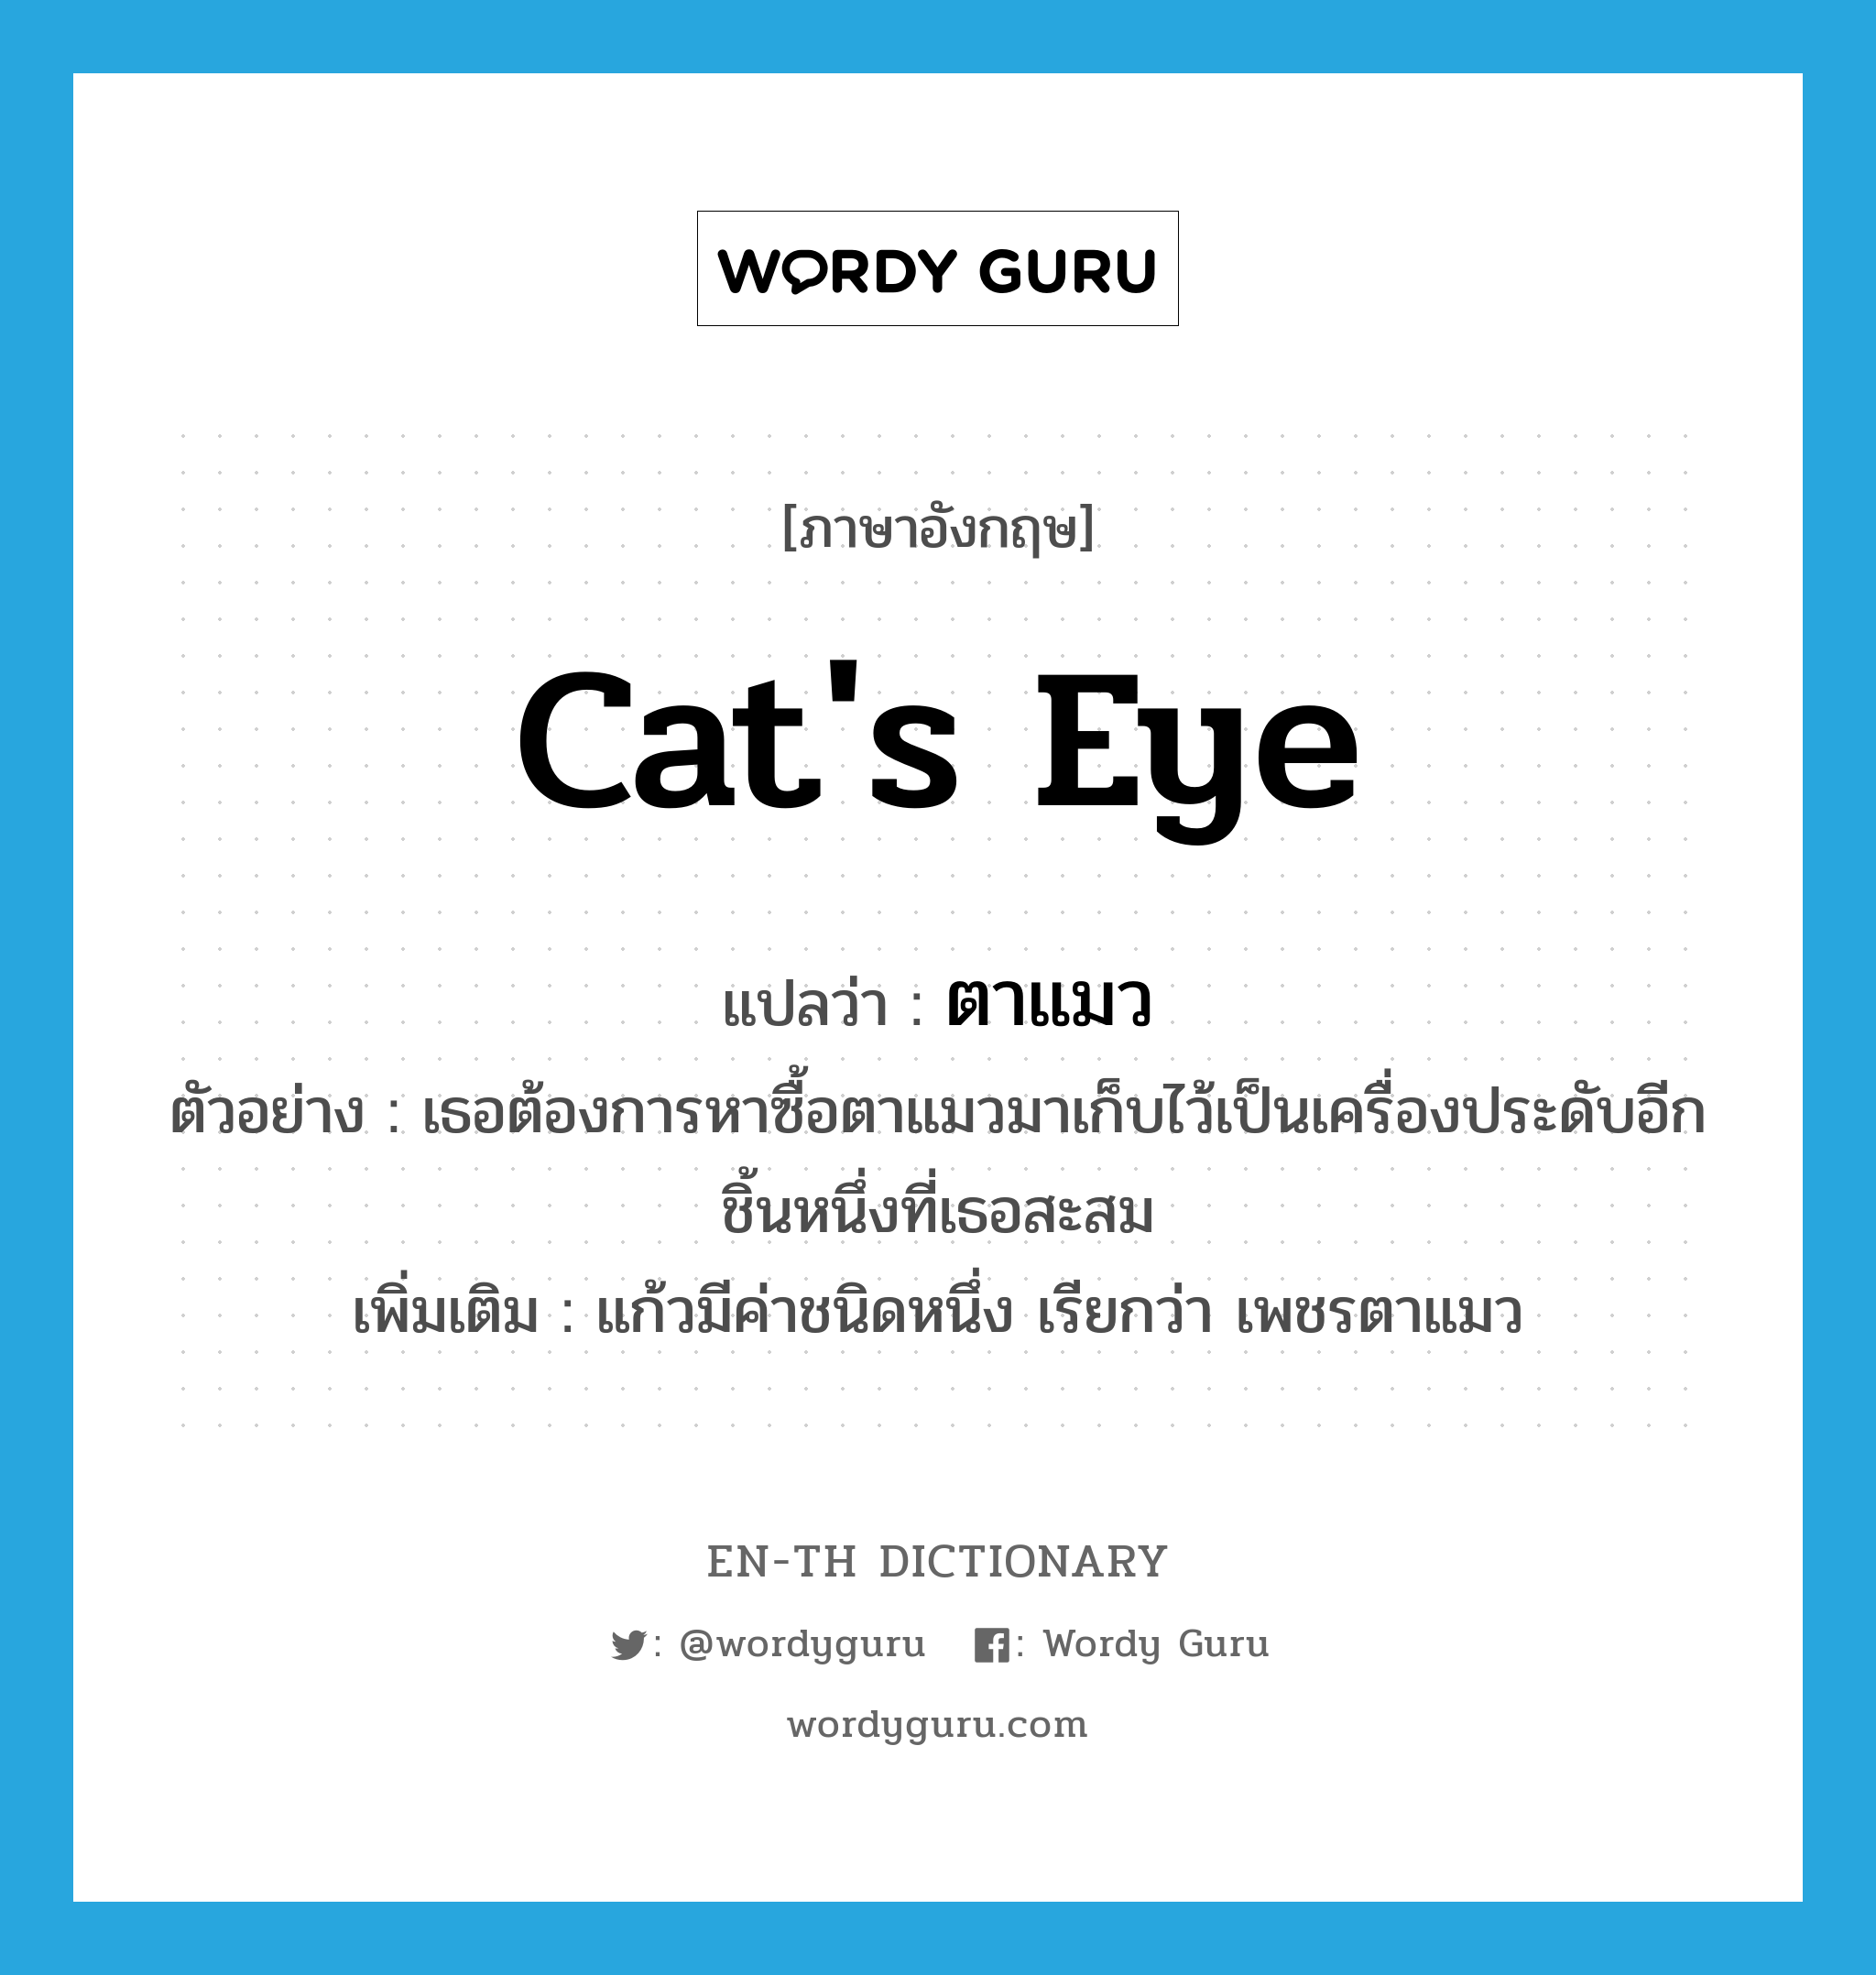 ตาแมว ภาษาอังกฤษ?, คำศัพท์ภาษาอังกฤษ ตาแมว แปลว่า cat's eye ประเภท N ตัวอย่าง เธอต้องการหาซื้อตาแมวมาเก็บไว้เป็นเครื่องประดับอีกชิ้นหนึ่งที่เธอสะสม เพิ่มเติม แก้วมีค่าชนิดหนึ่ง เรียกว่า เพชรตาแมว หมวด N